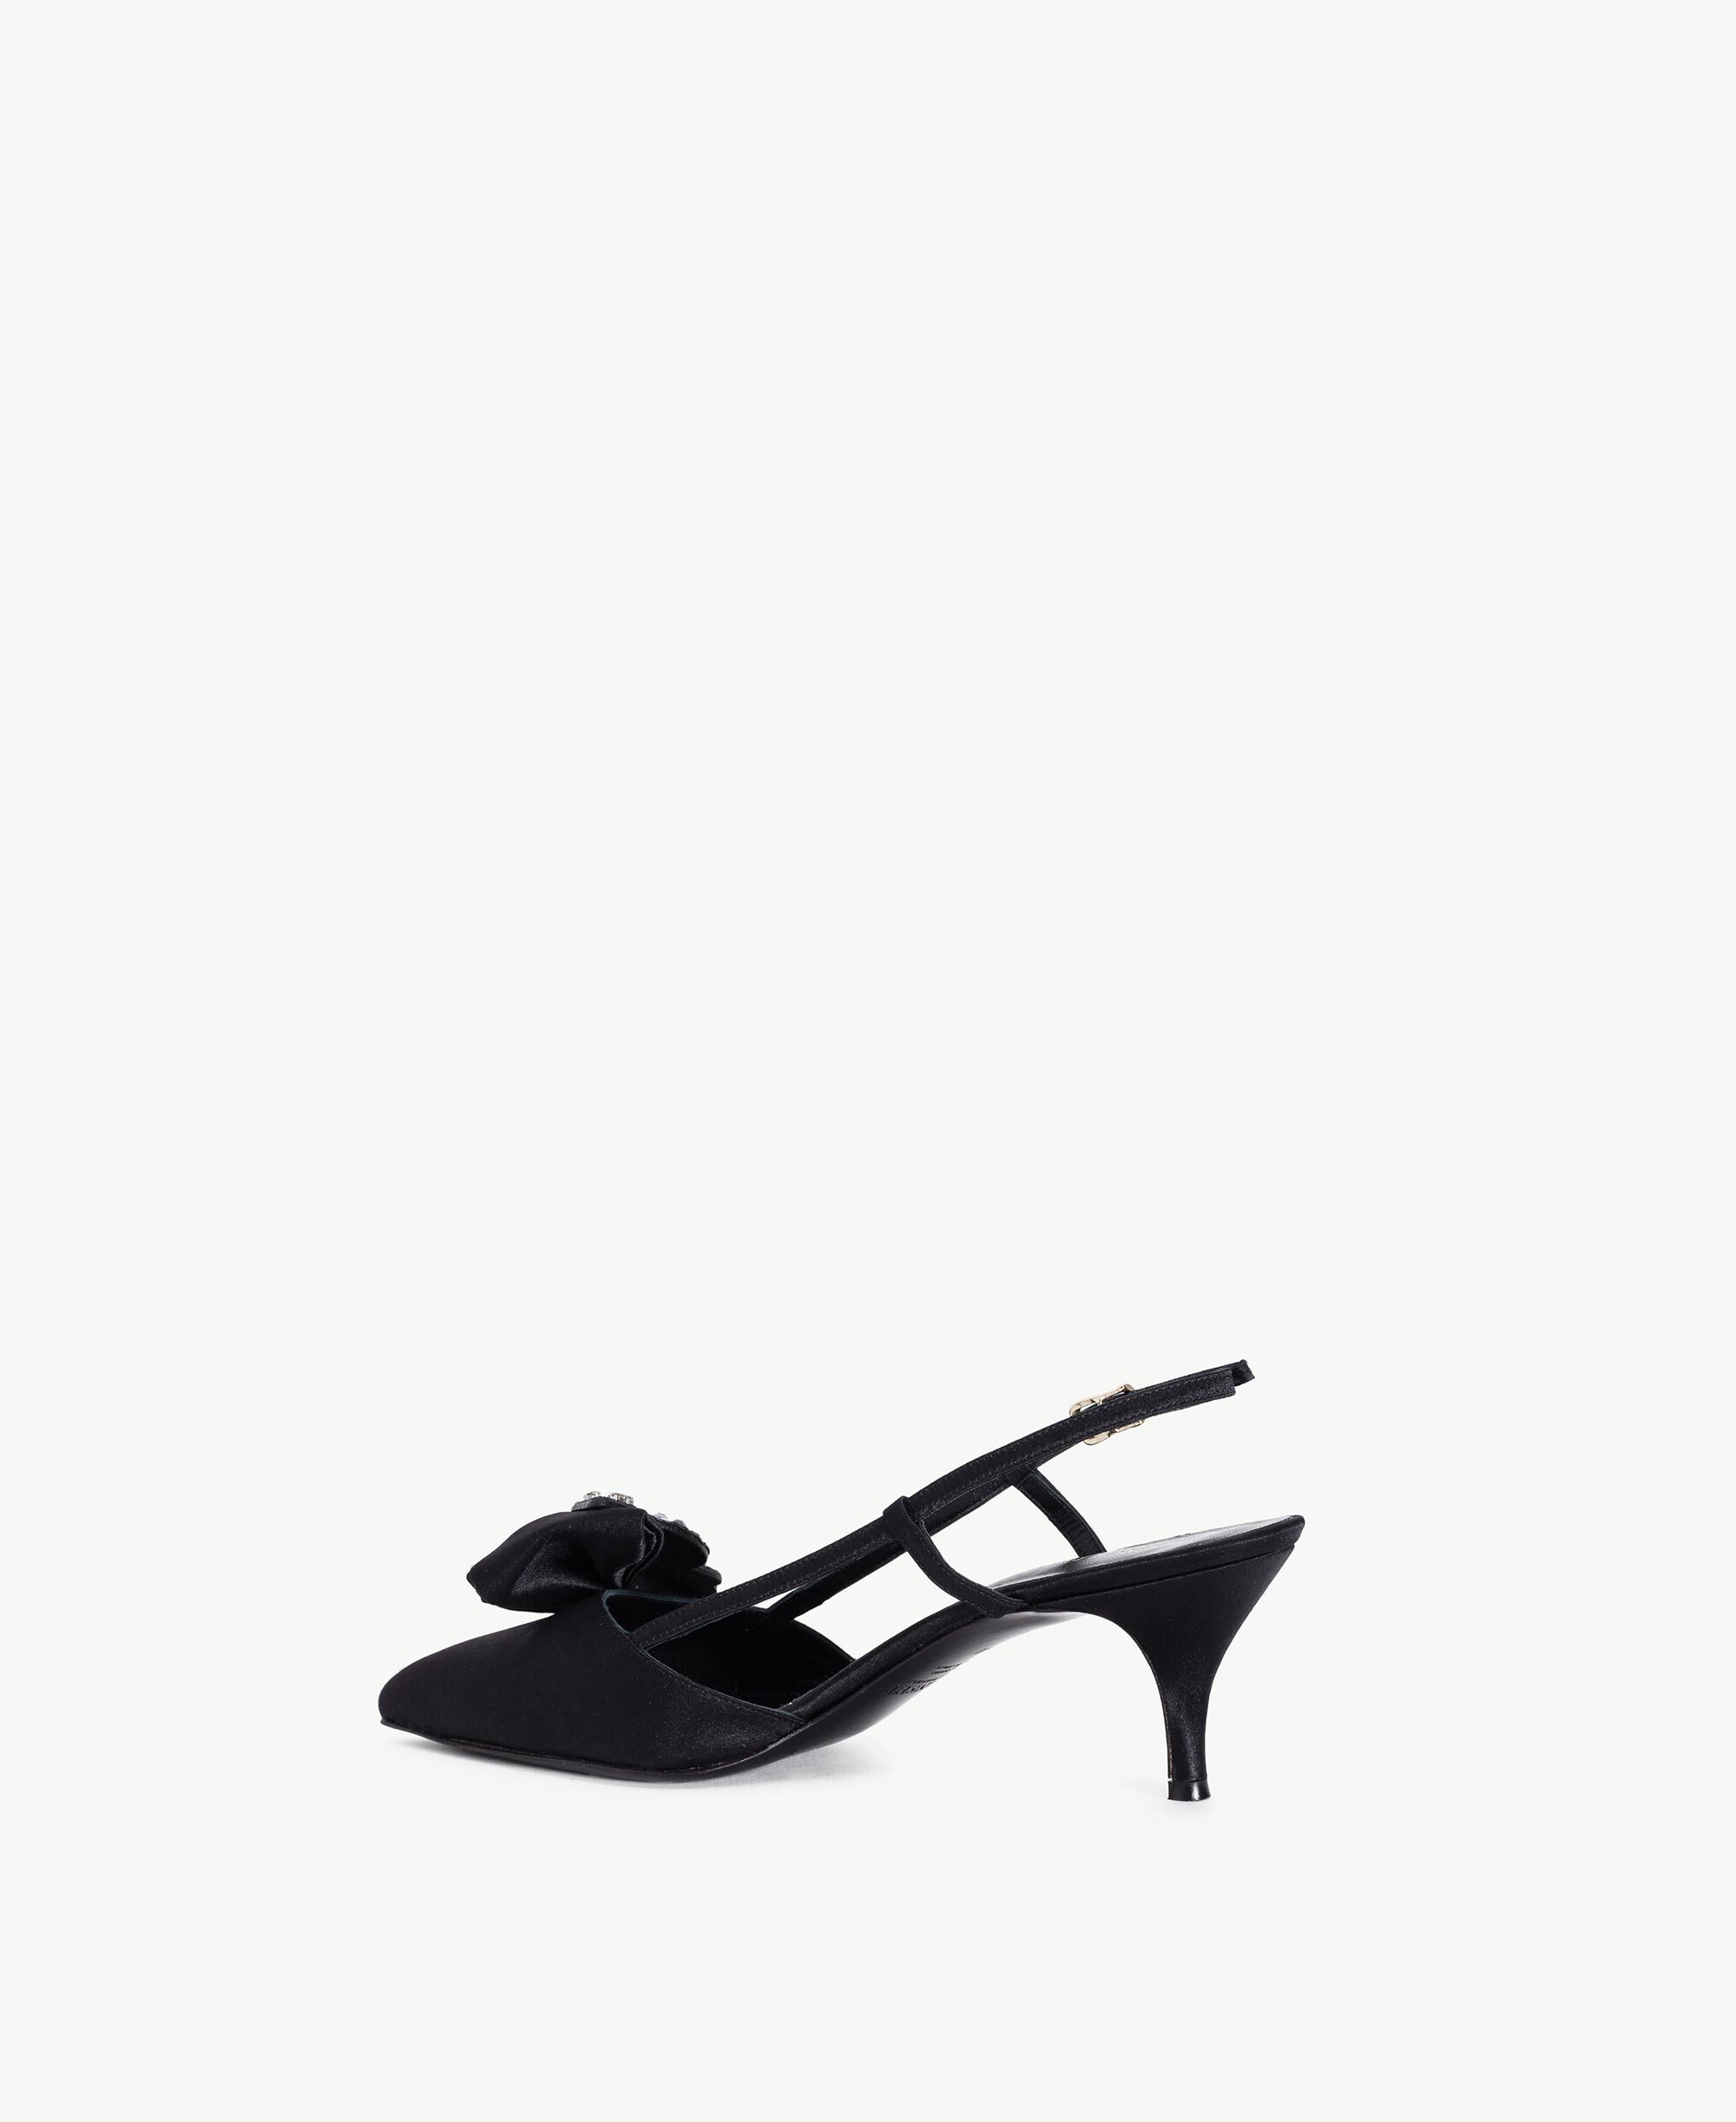 black satin court shoes